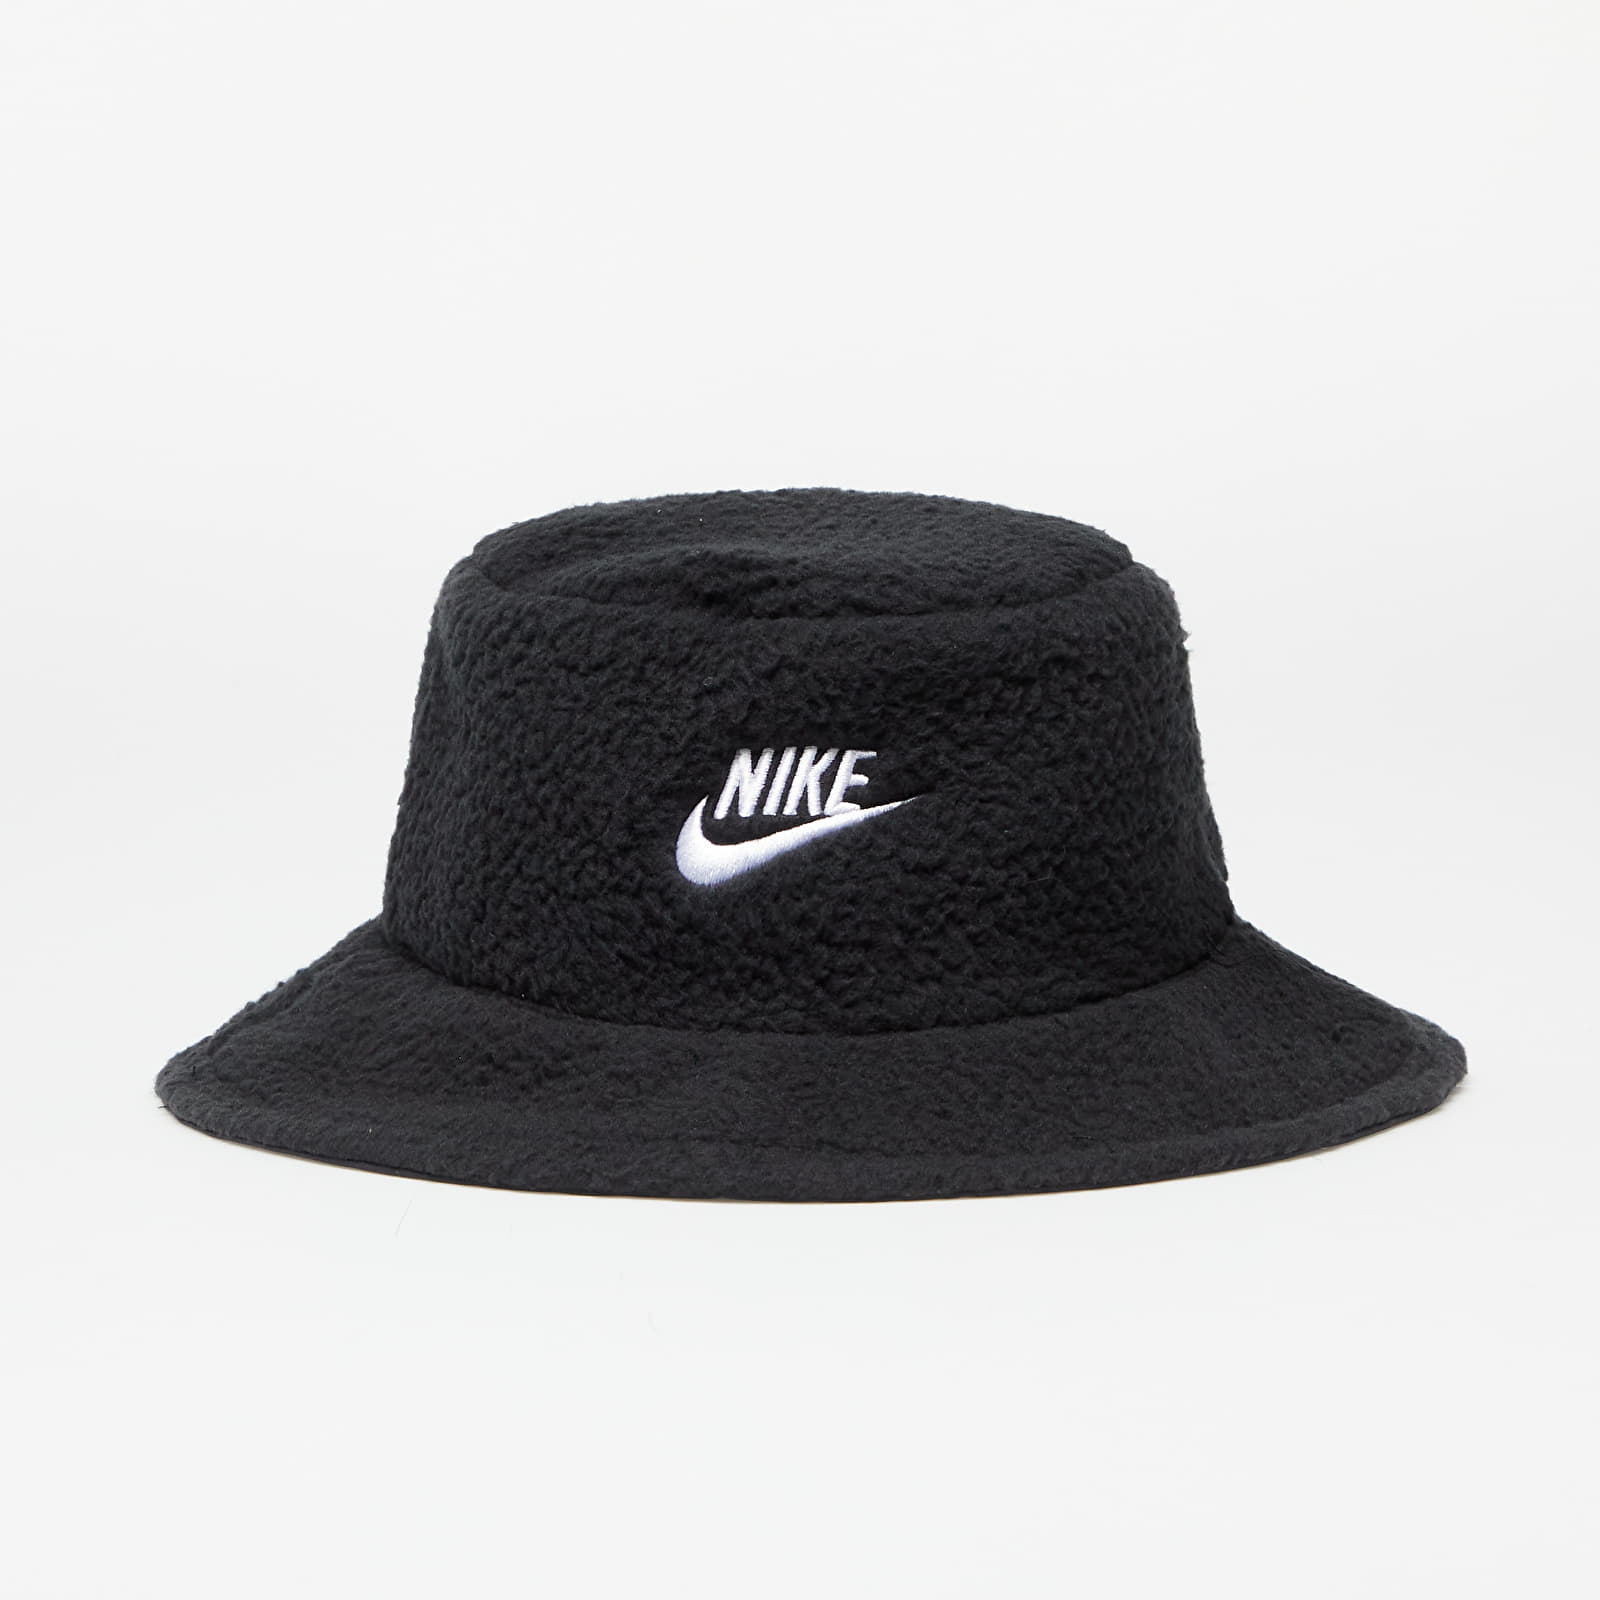 Nike - apex bucket hat black